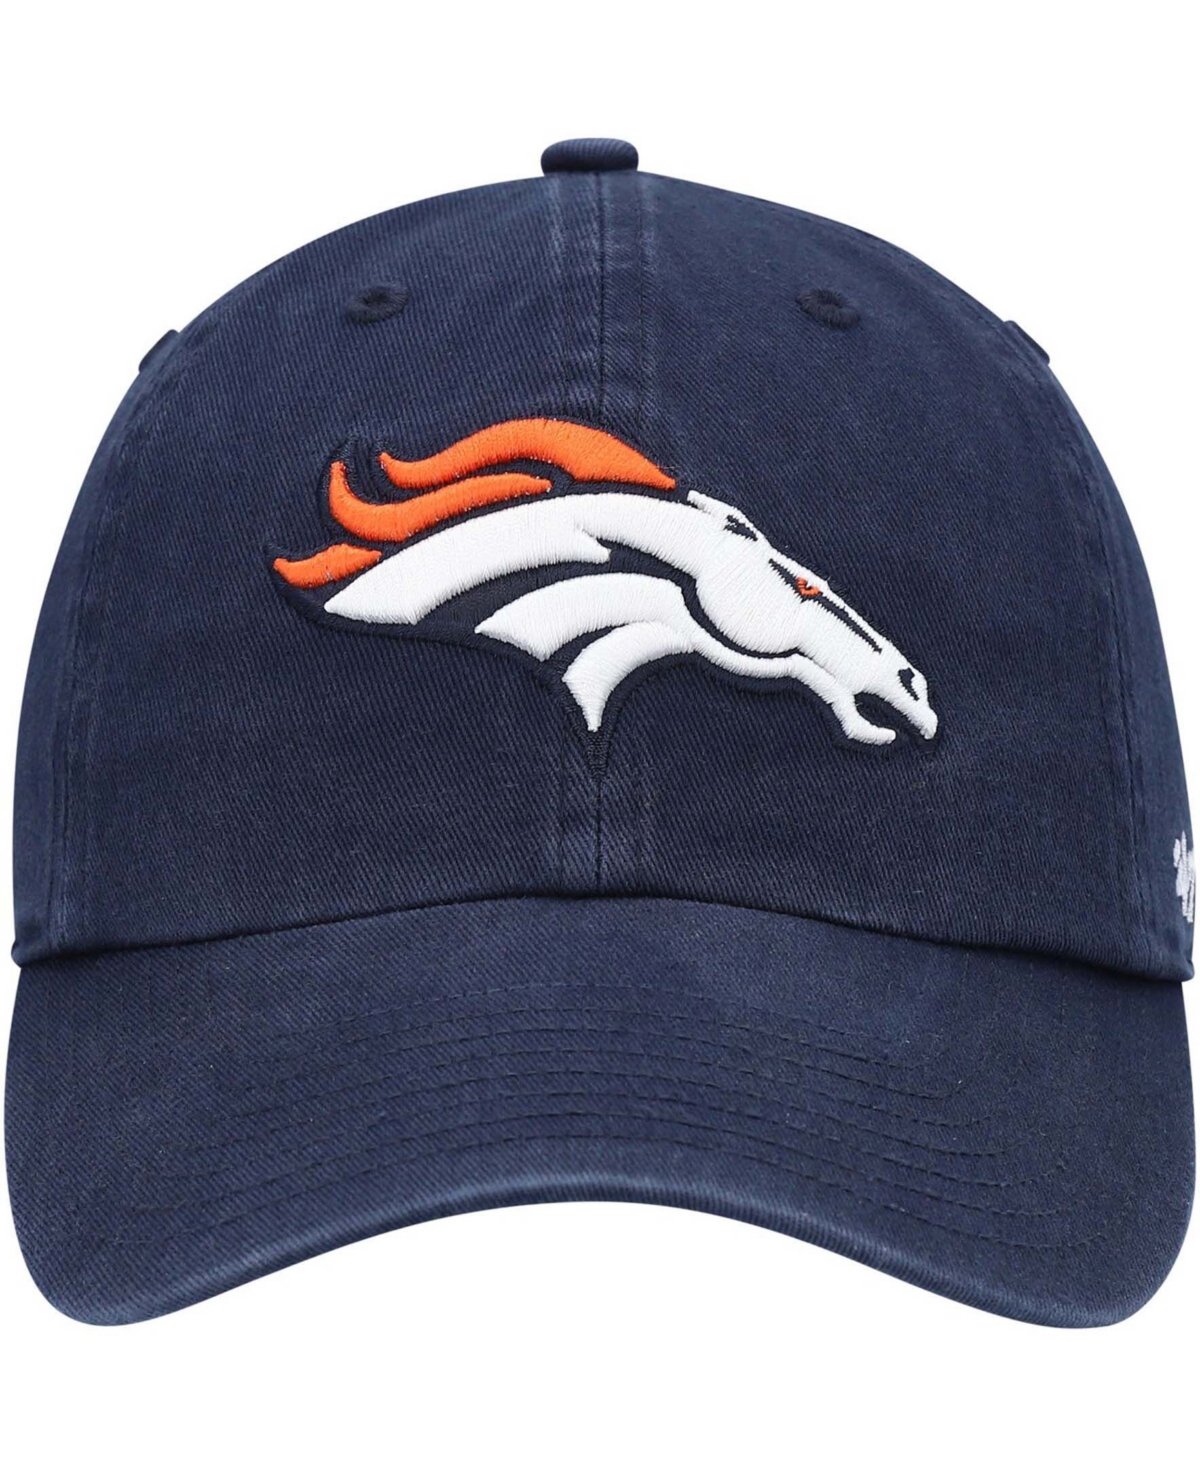 Shop 47 Brand Boys Navy Denver Broncos Logo Clean Up Adjustable Hat